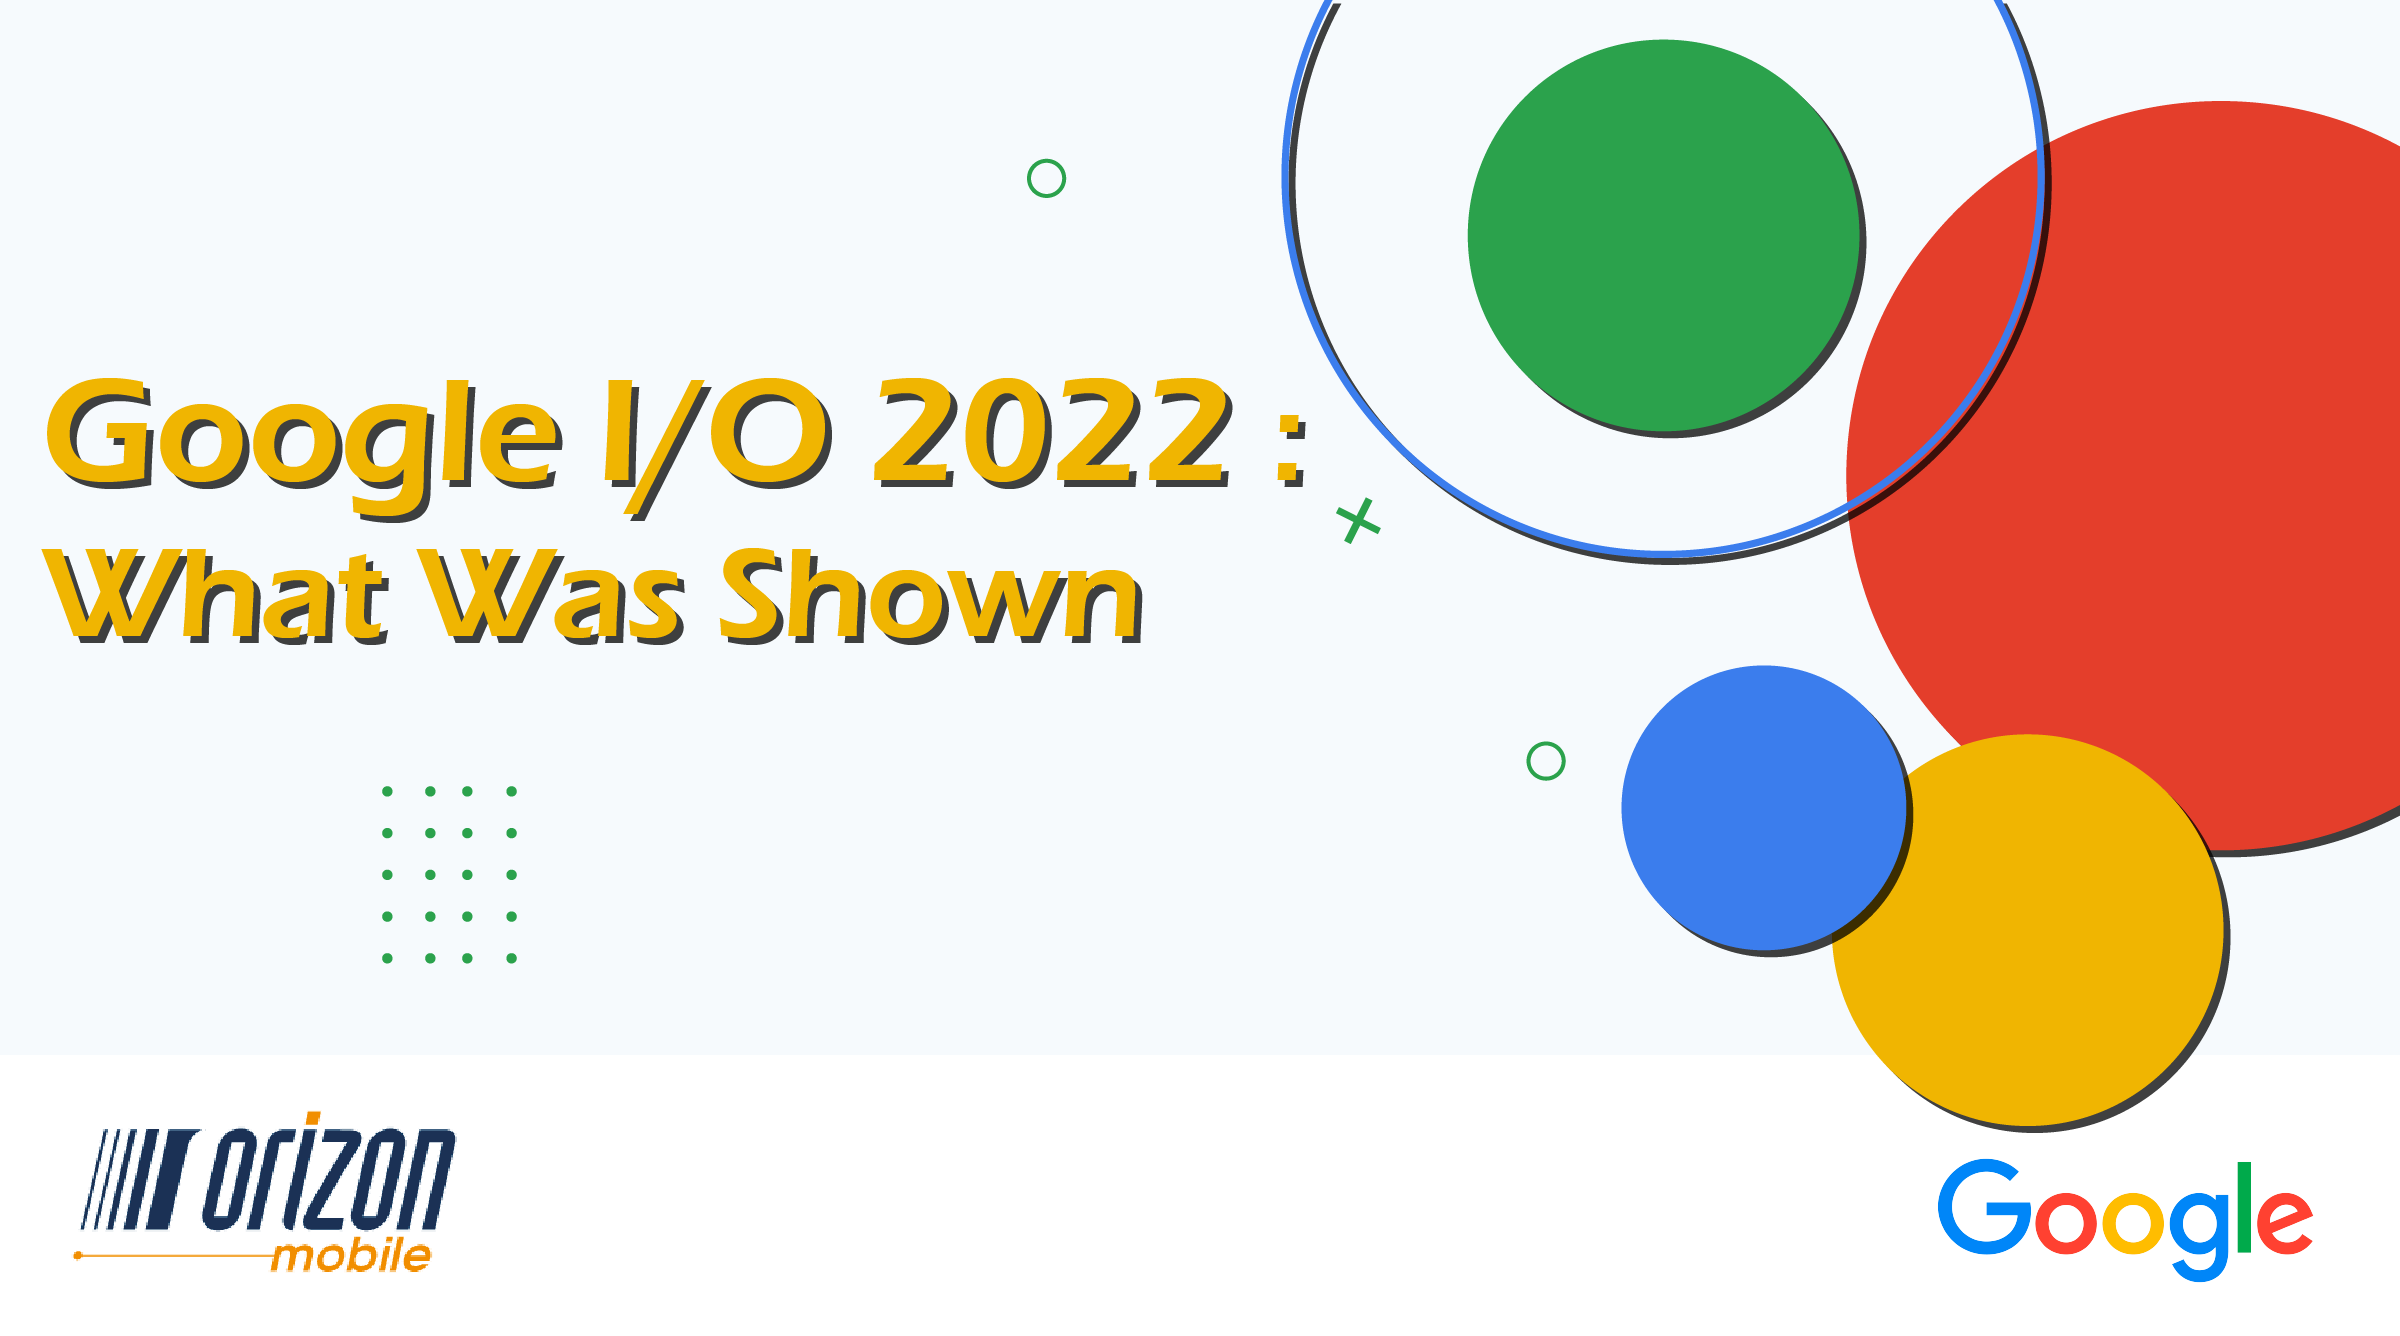 Gabarit blog - google IO 2022 ENG_Plan de travail 1